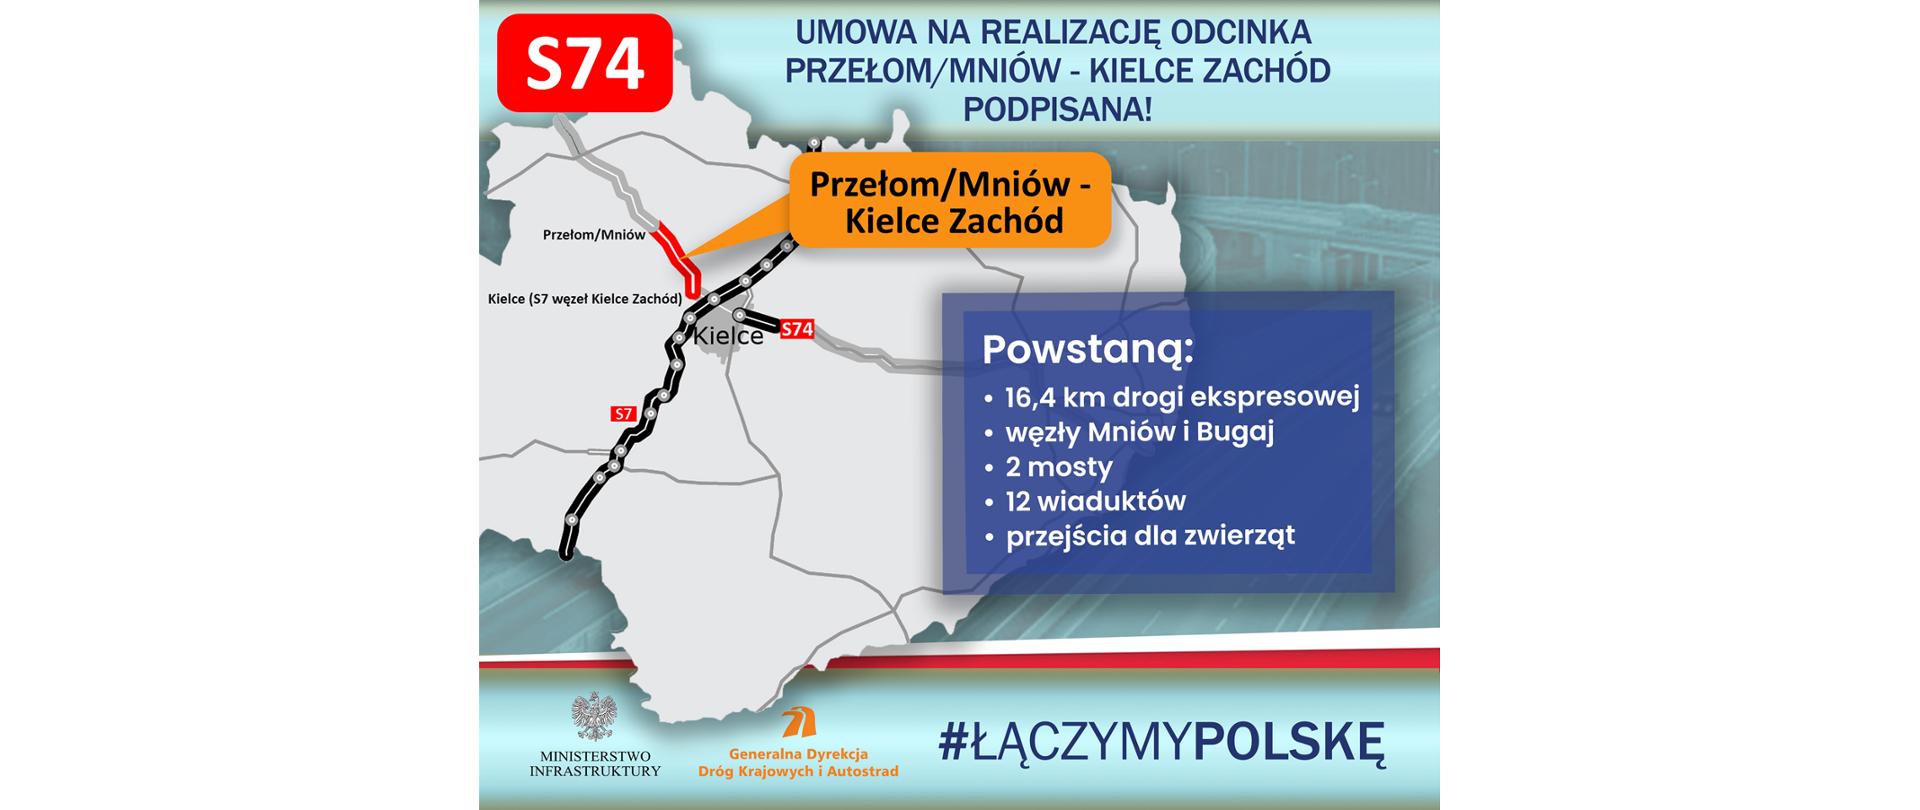 Umowa na realizację drogi S74 od Mniowa do Kielc podpisana